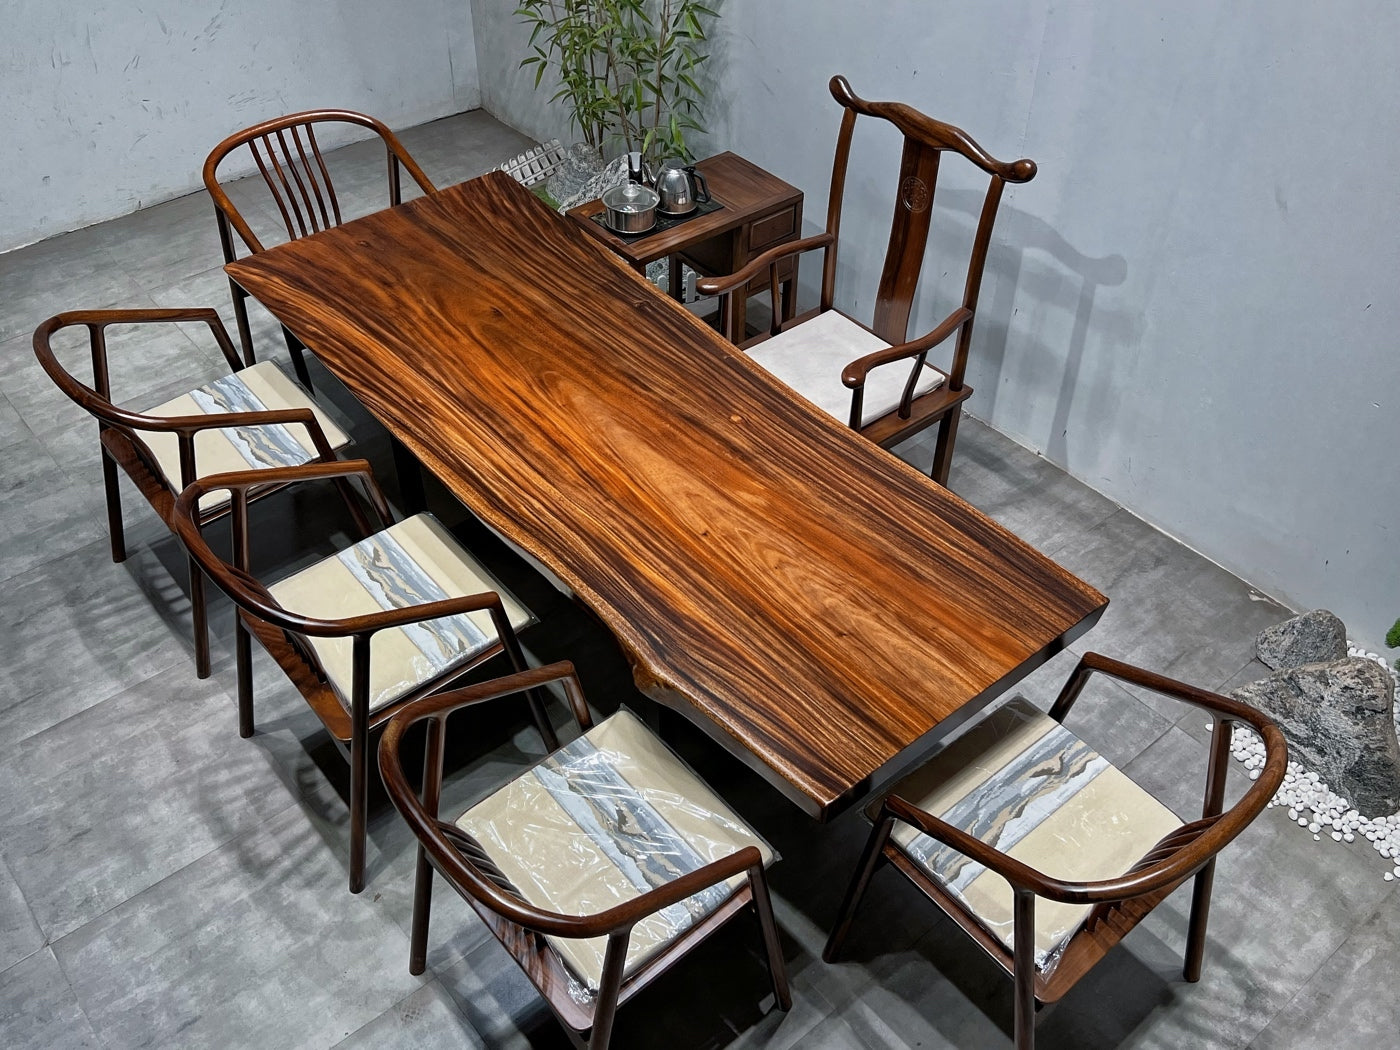 Plattbord, bord i akaciaträ - sydamerikansk svart valnöt